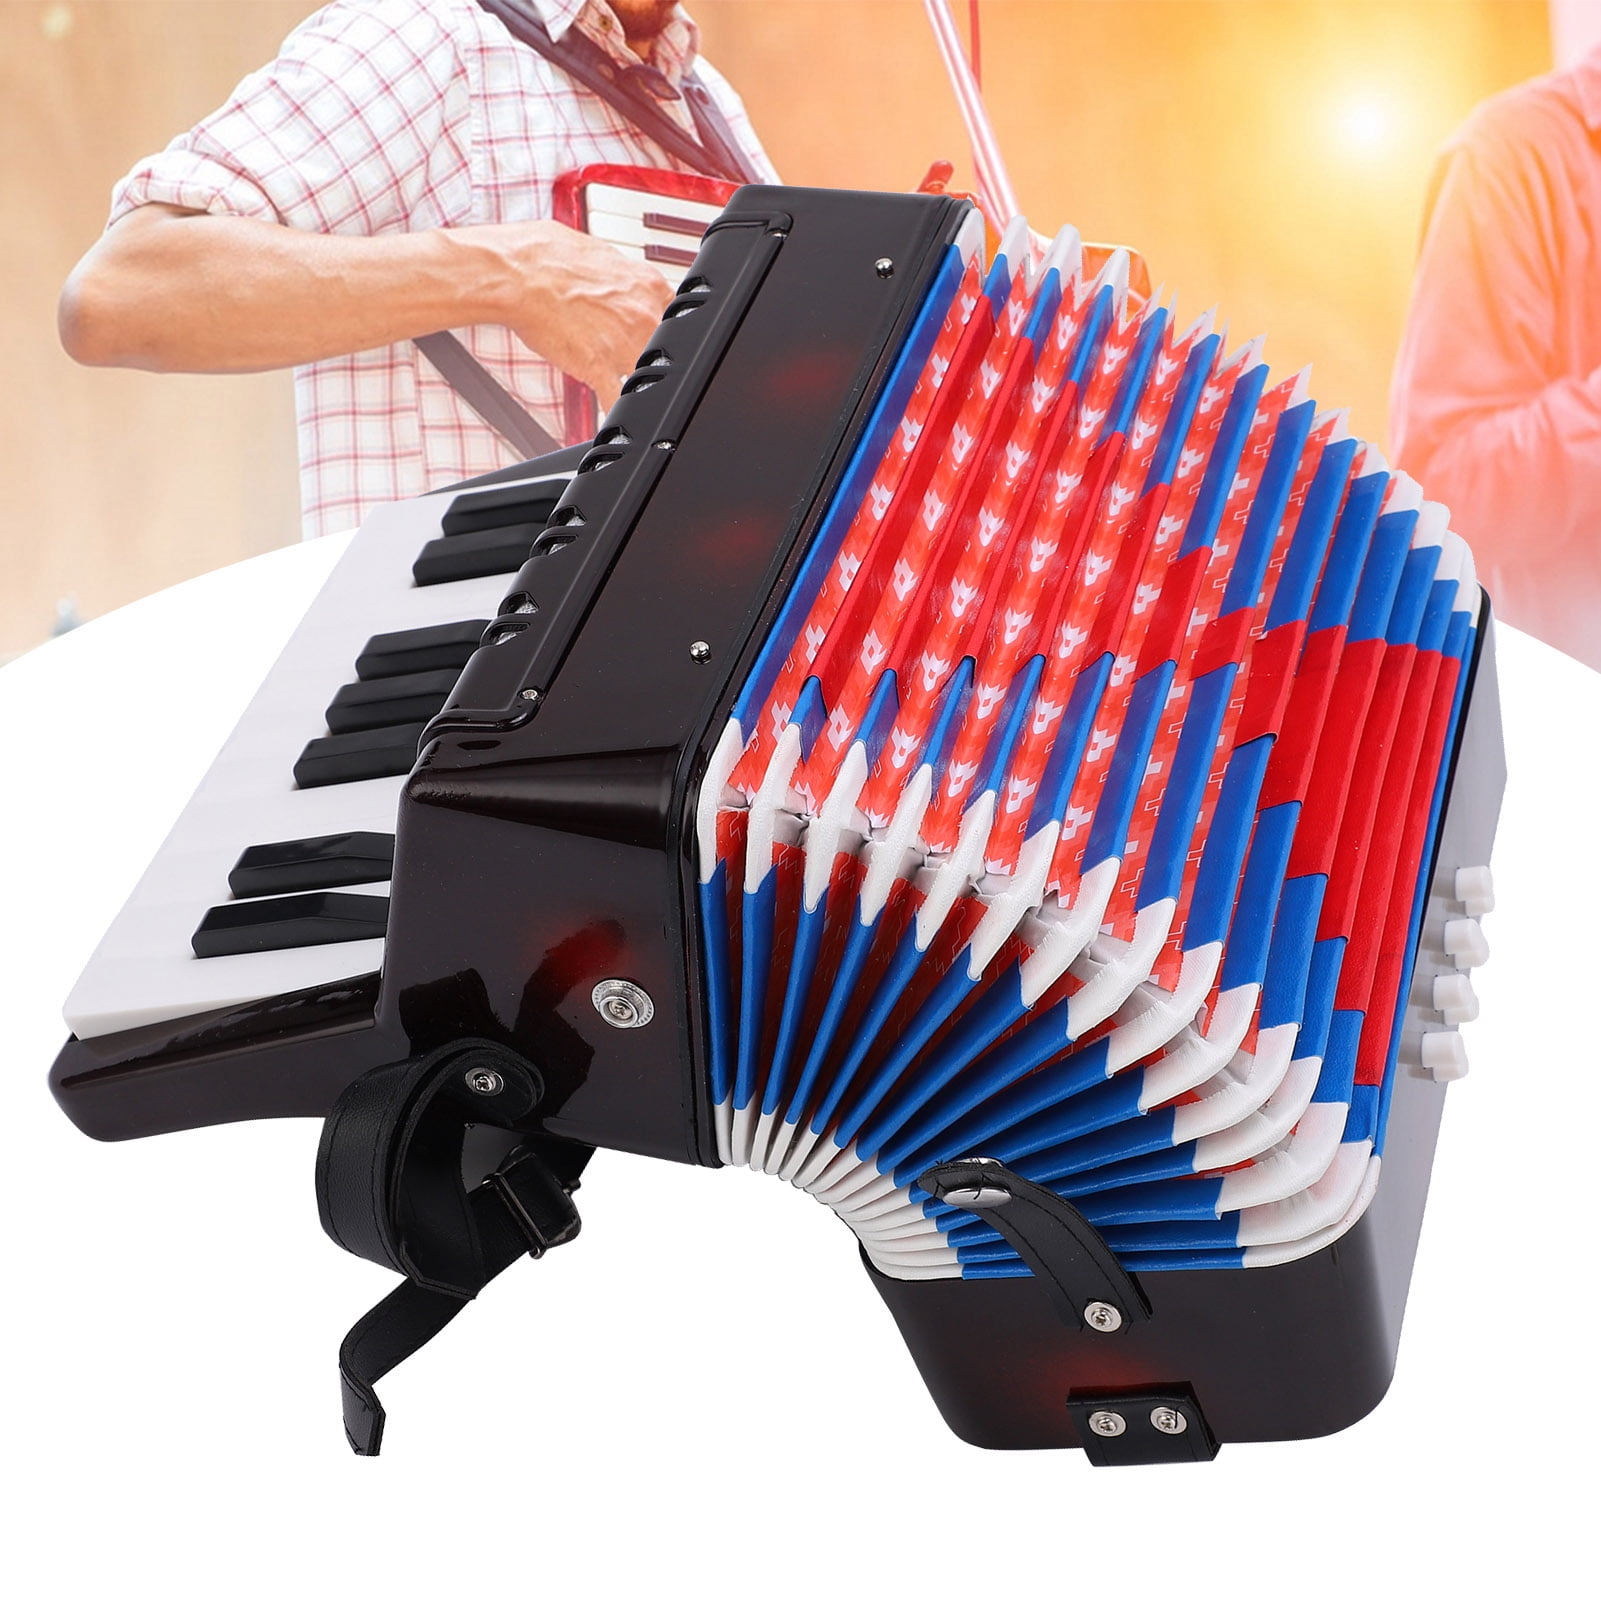 ESTINK Accordion,Accordion Musical Piano Keyboard Toy Rhythm